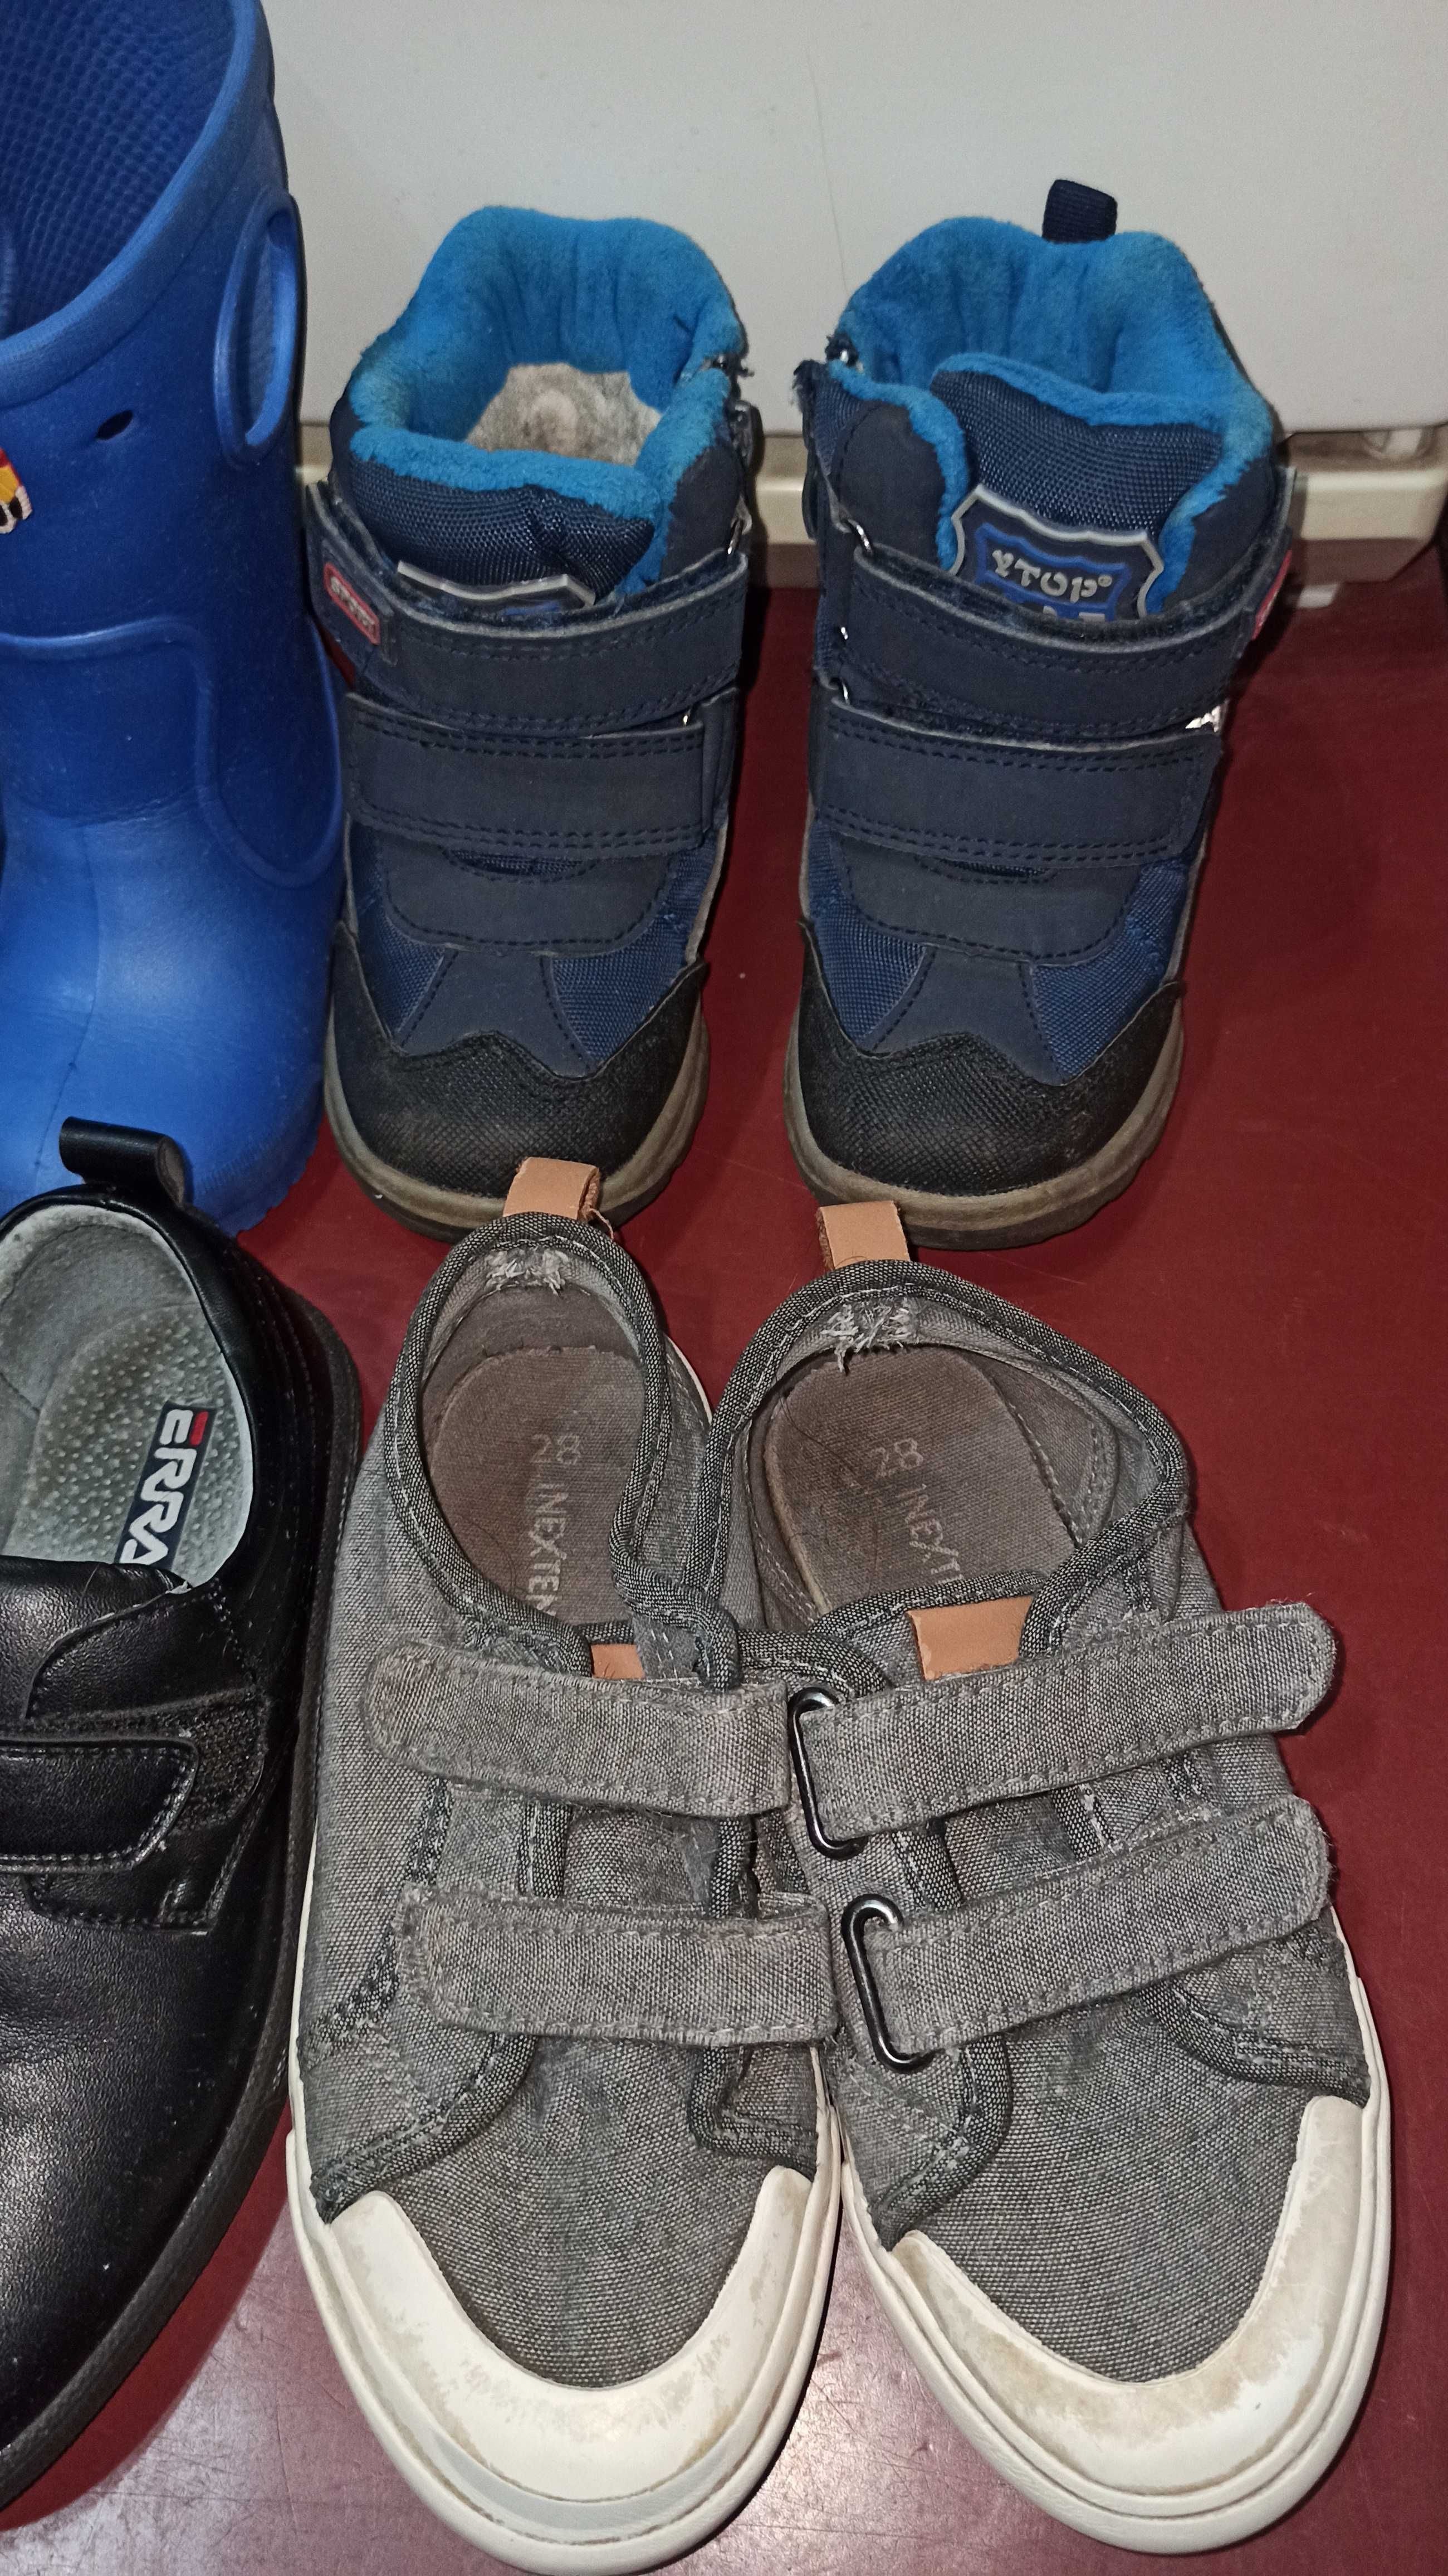 Дитяче взуття хлопчику 22-30 розміри чешки кеди туфлі сапожки